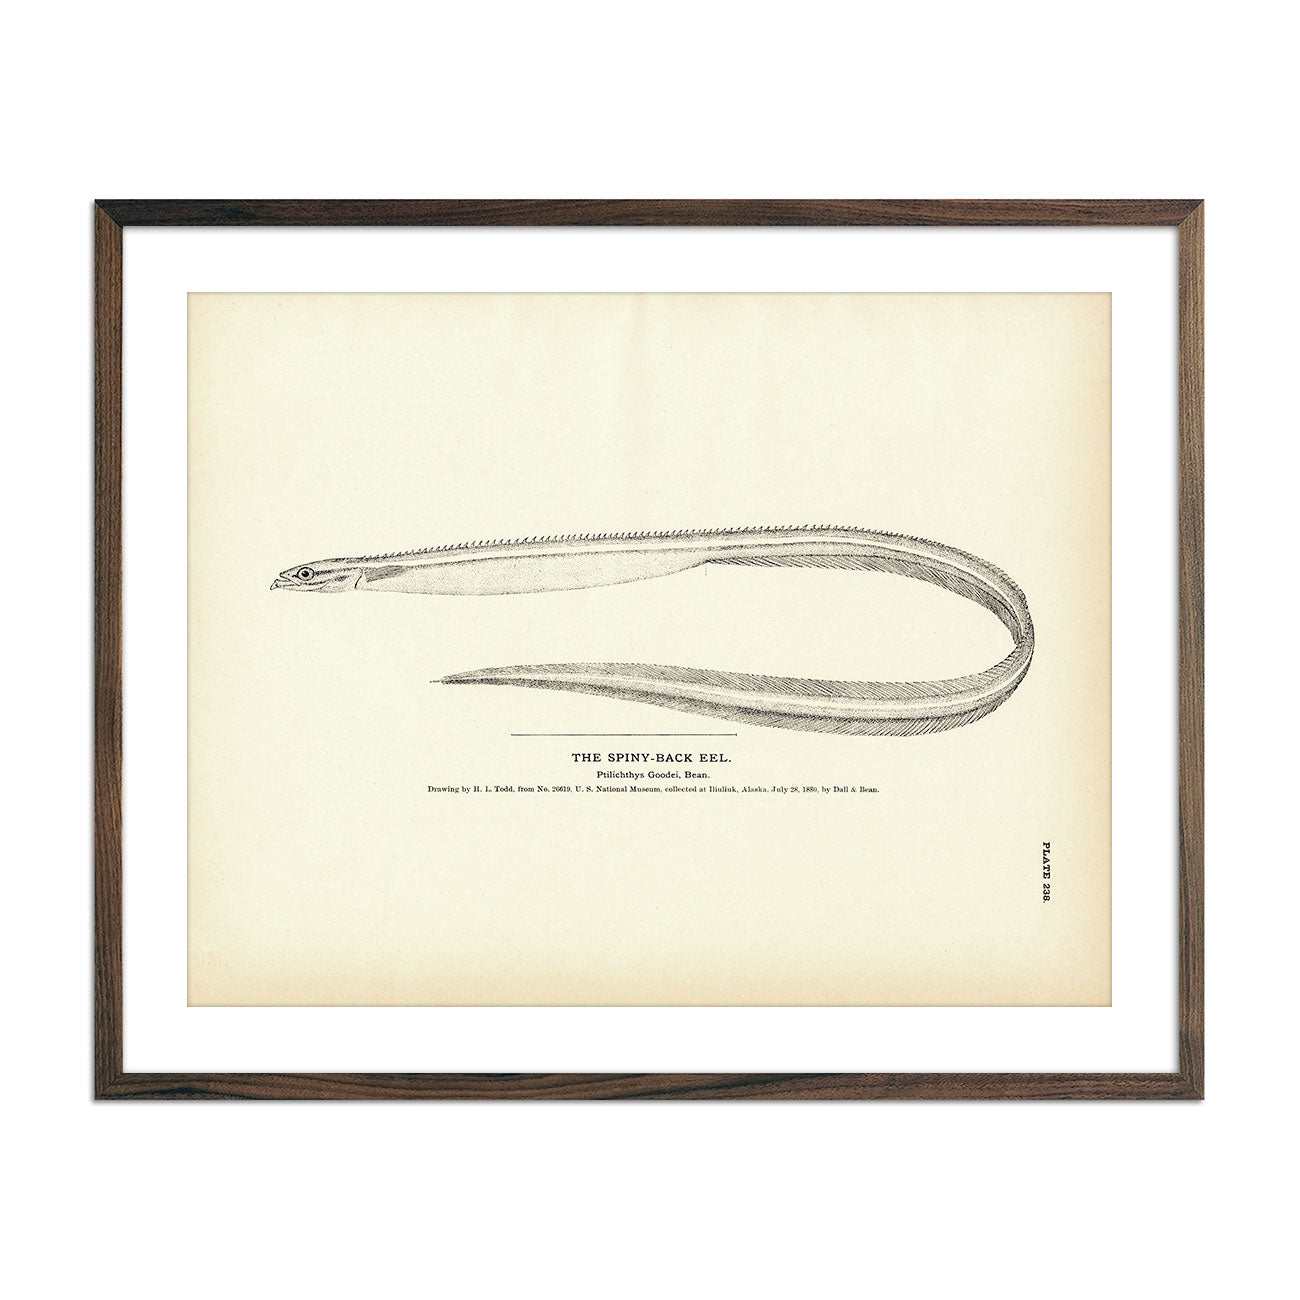 Vintage Spiny-Back Eel fish print